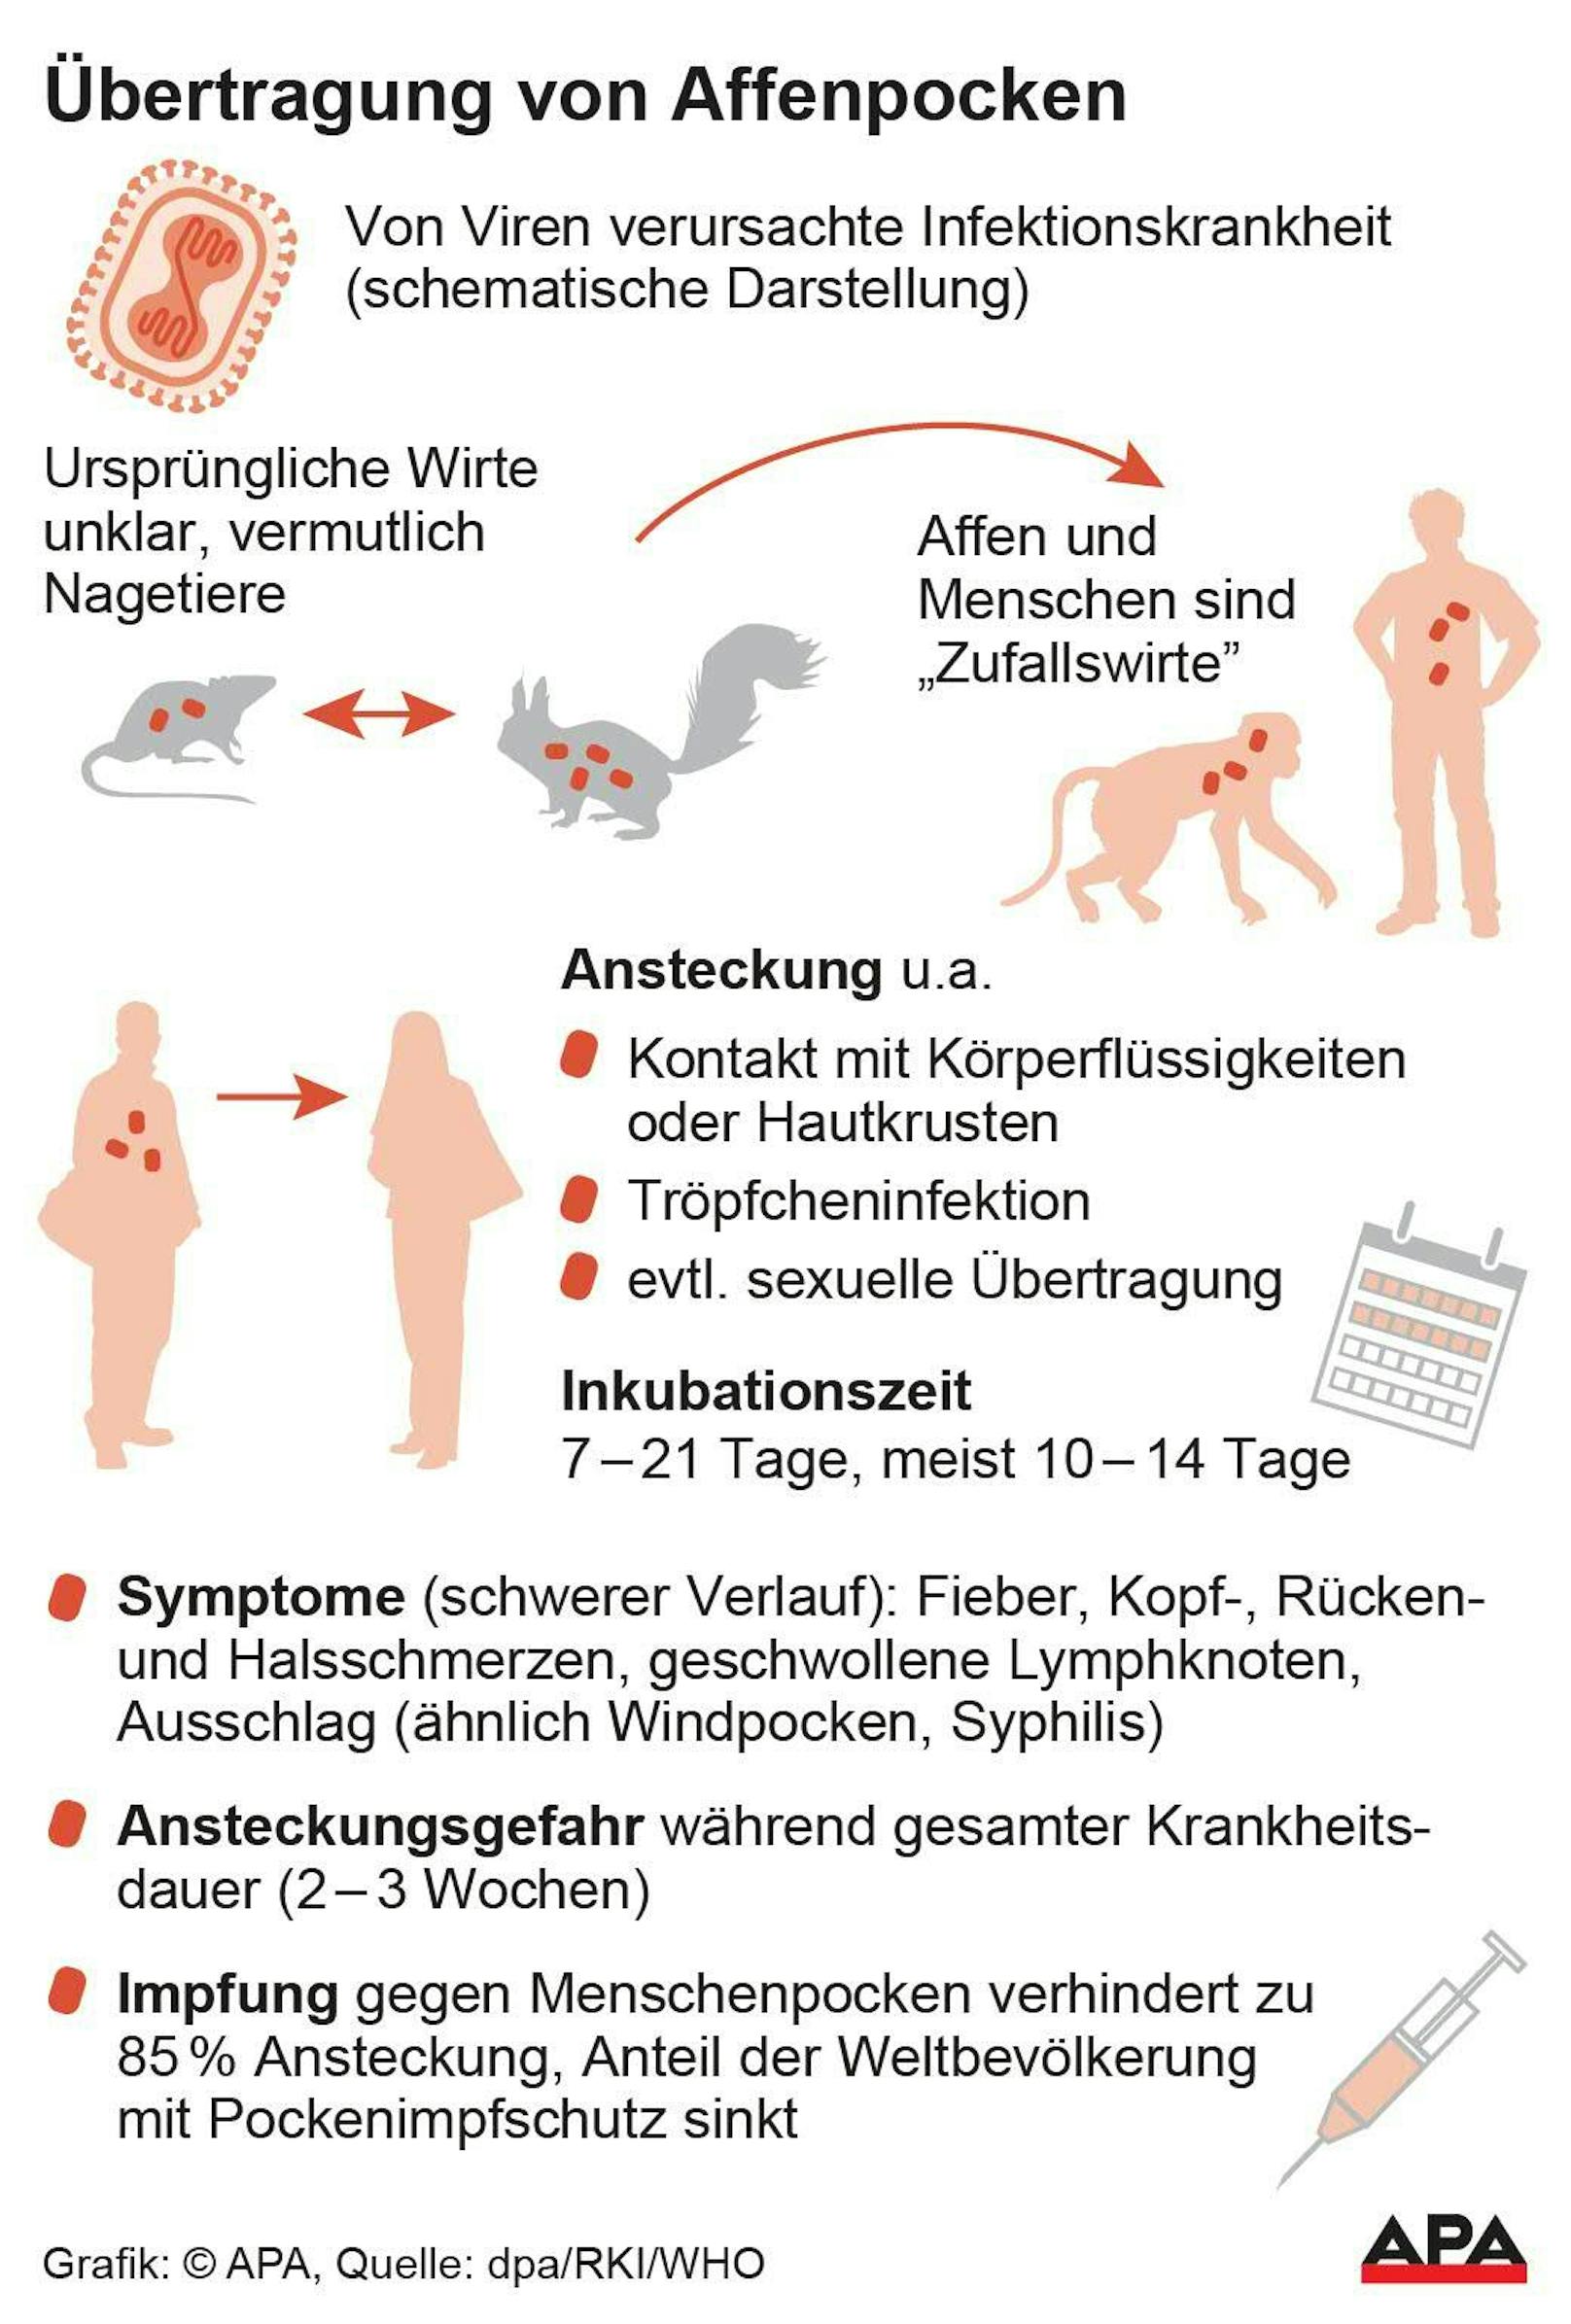 Affenpockenvirus: So werden sie übertragen und das sind ihre Symptome.&nbsp;